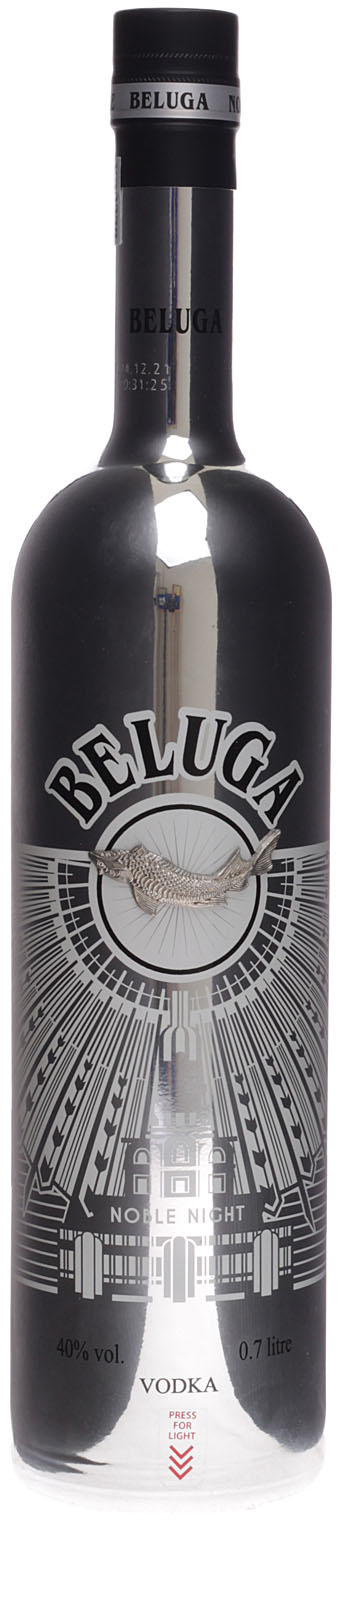 Beluga Celebration Vodka 1L (40% Vol.) - Beluga - Vodka